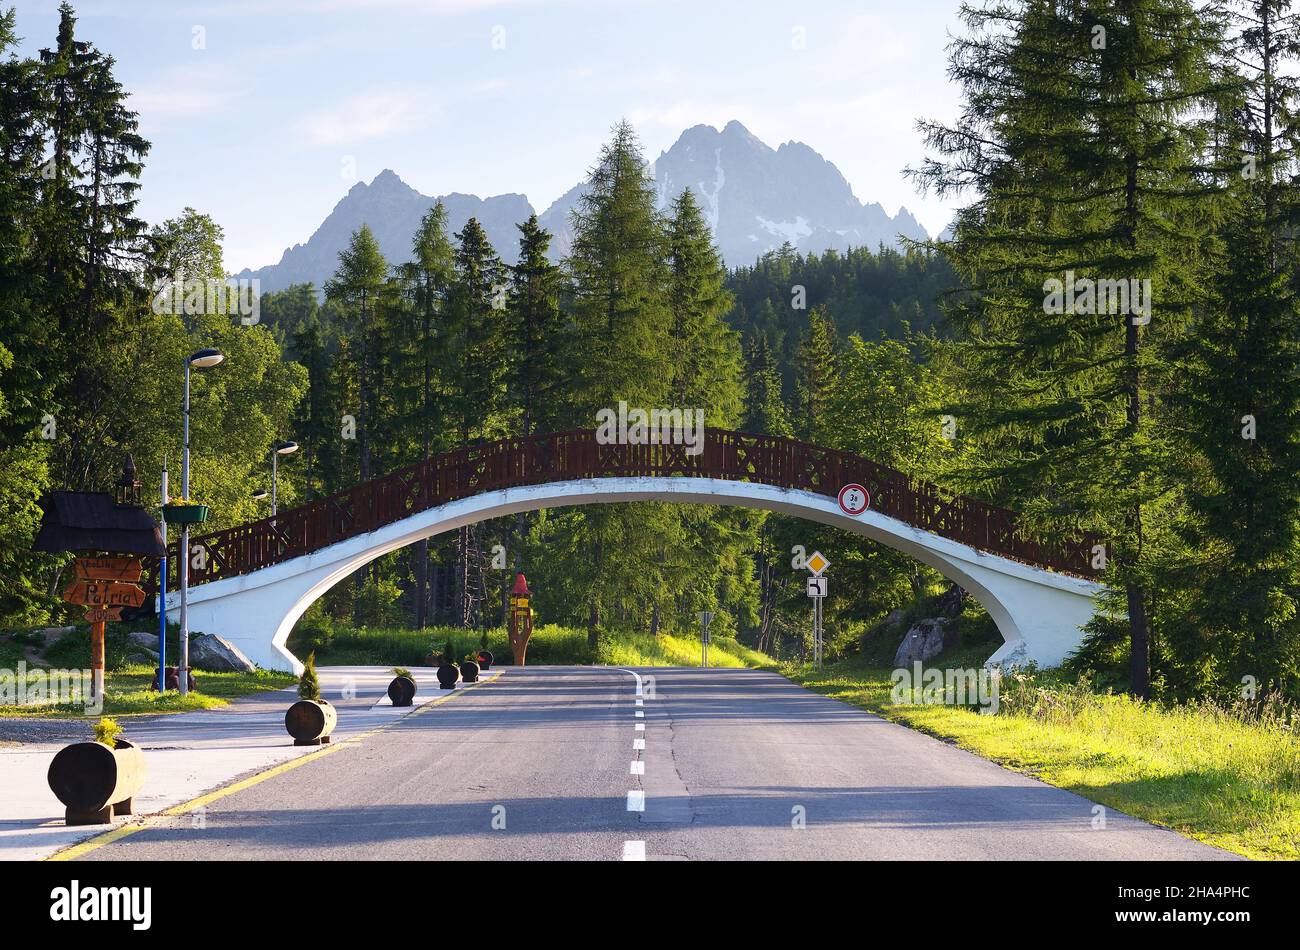 SLOWAKEI, SHTRBSVE PLESO - JUNI 29: Sommerlandschaft mit Straße in einem Bergort und einer Fußgängerbrücke. Tatra, Slowakei Stockfoto